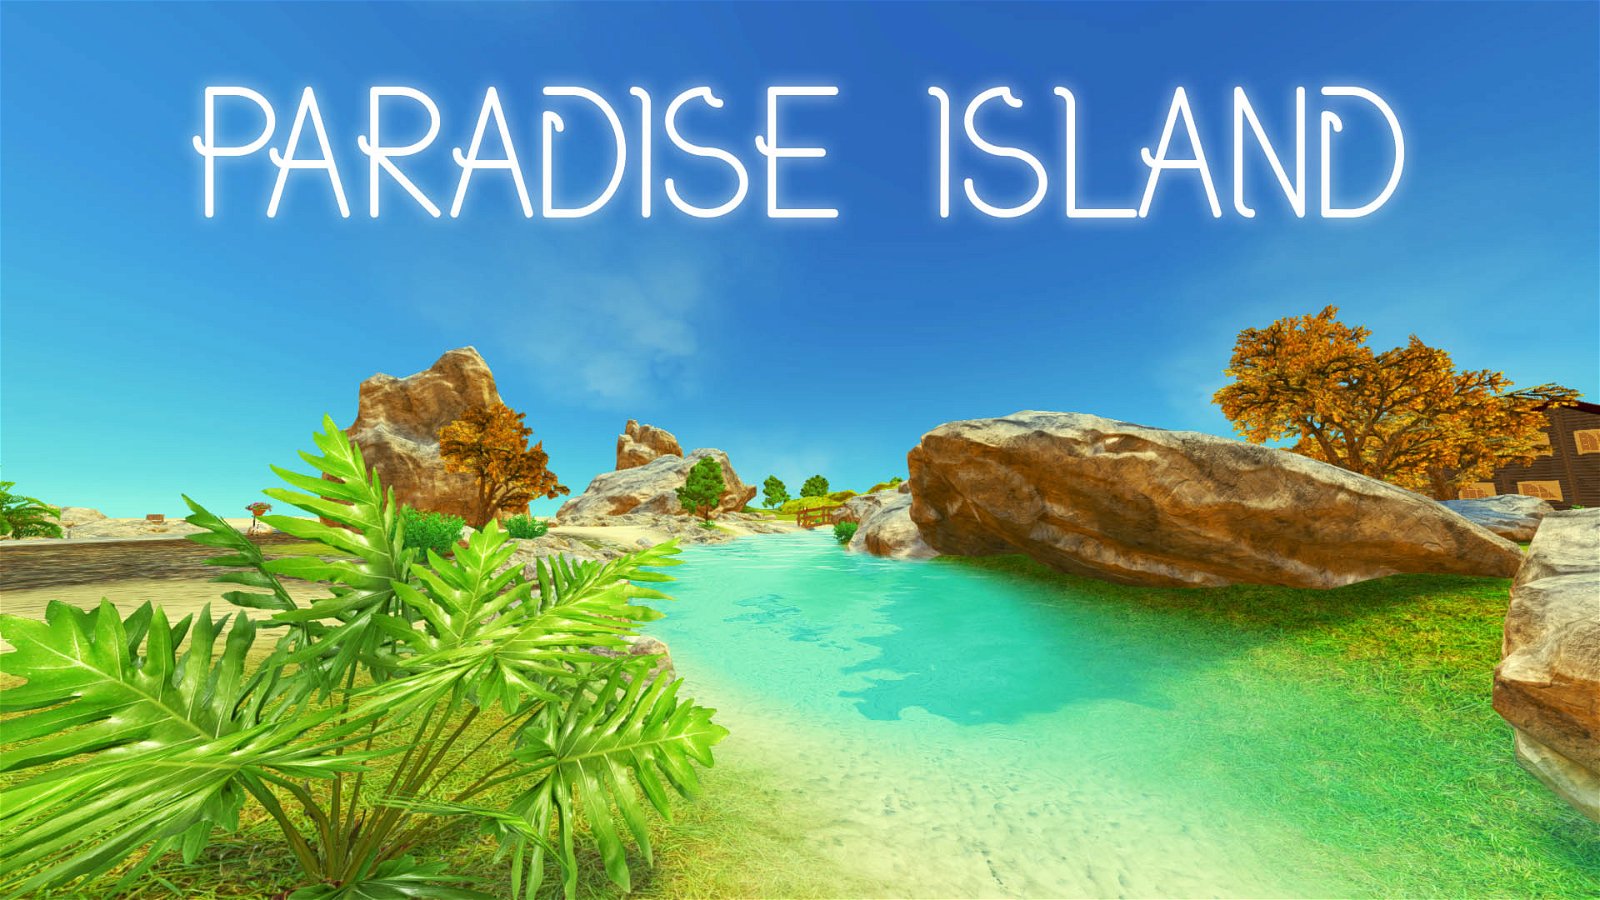 Image of Paradise Island